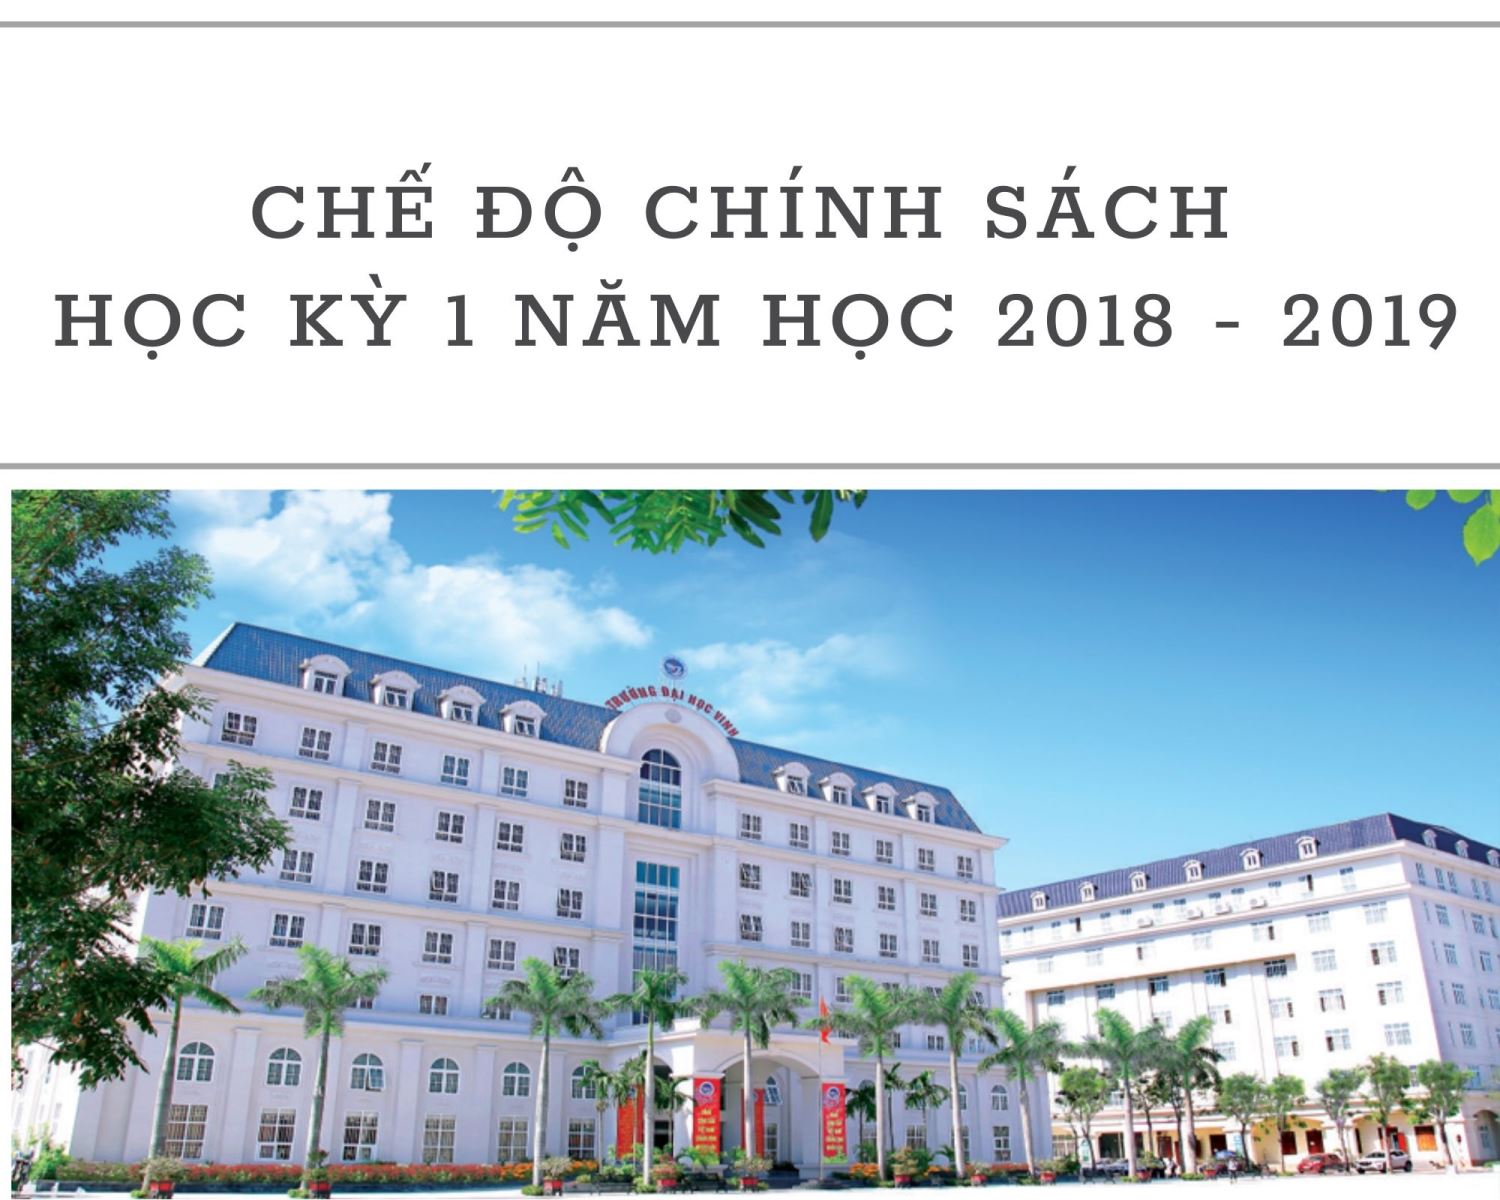 Trường Đại học Vinh chi 10.169.965.000 đồng cho học sinh, sinh viên thuộc diện chính sách và học bổng cho Lưu học sinh Lào theo diện đào tạo hợp đồng với tỉnh Nghệ An, học kỳ 1 năm học 2018 - 2019